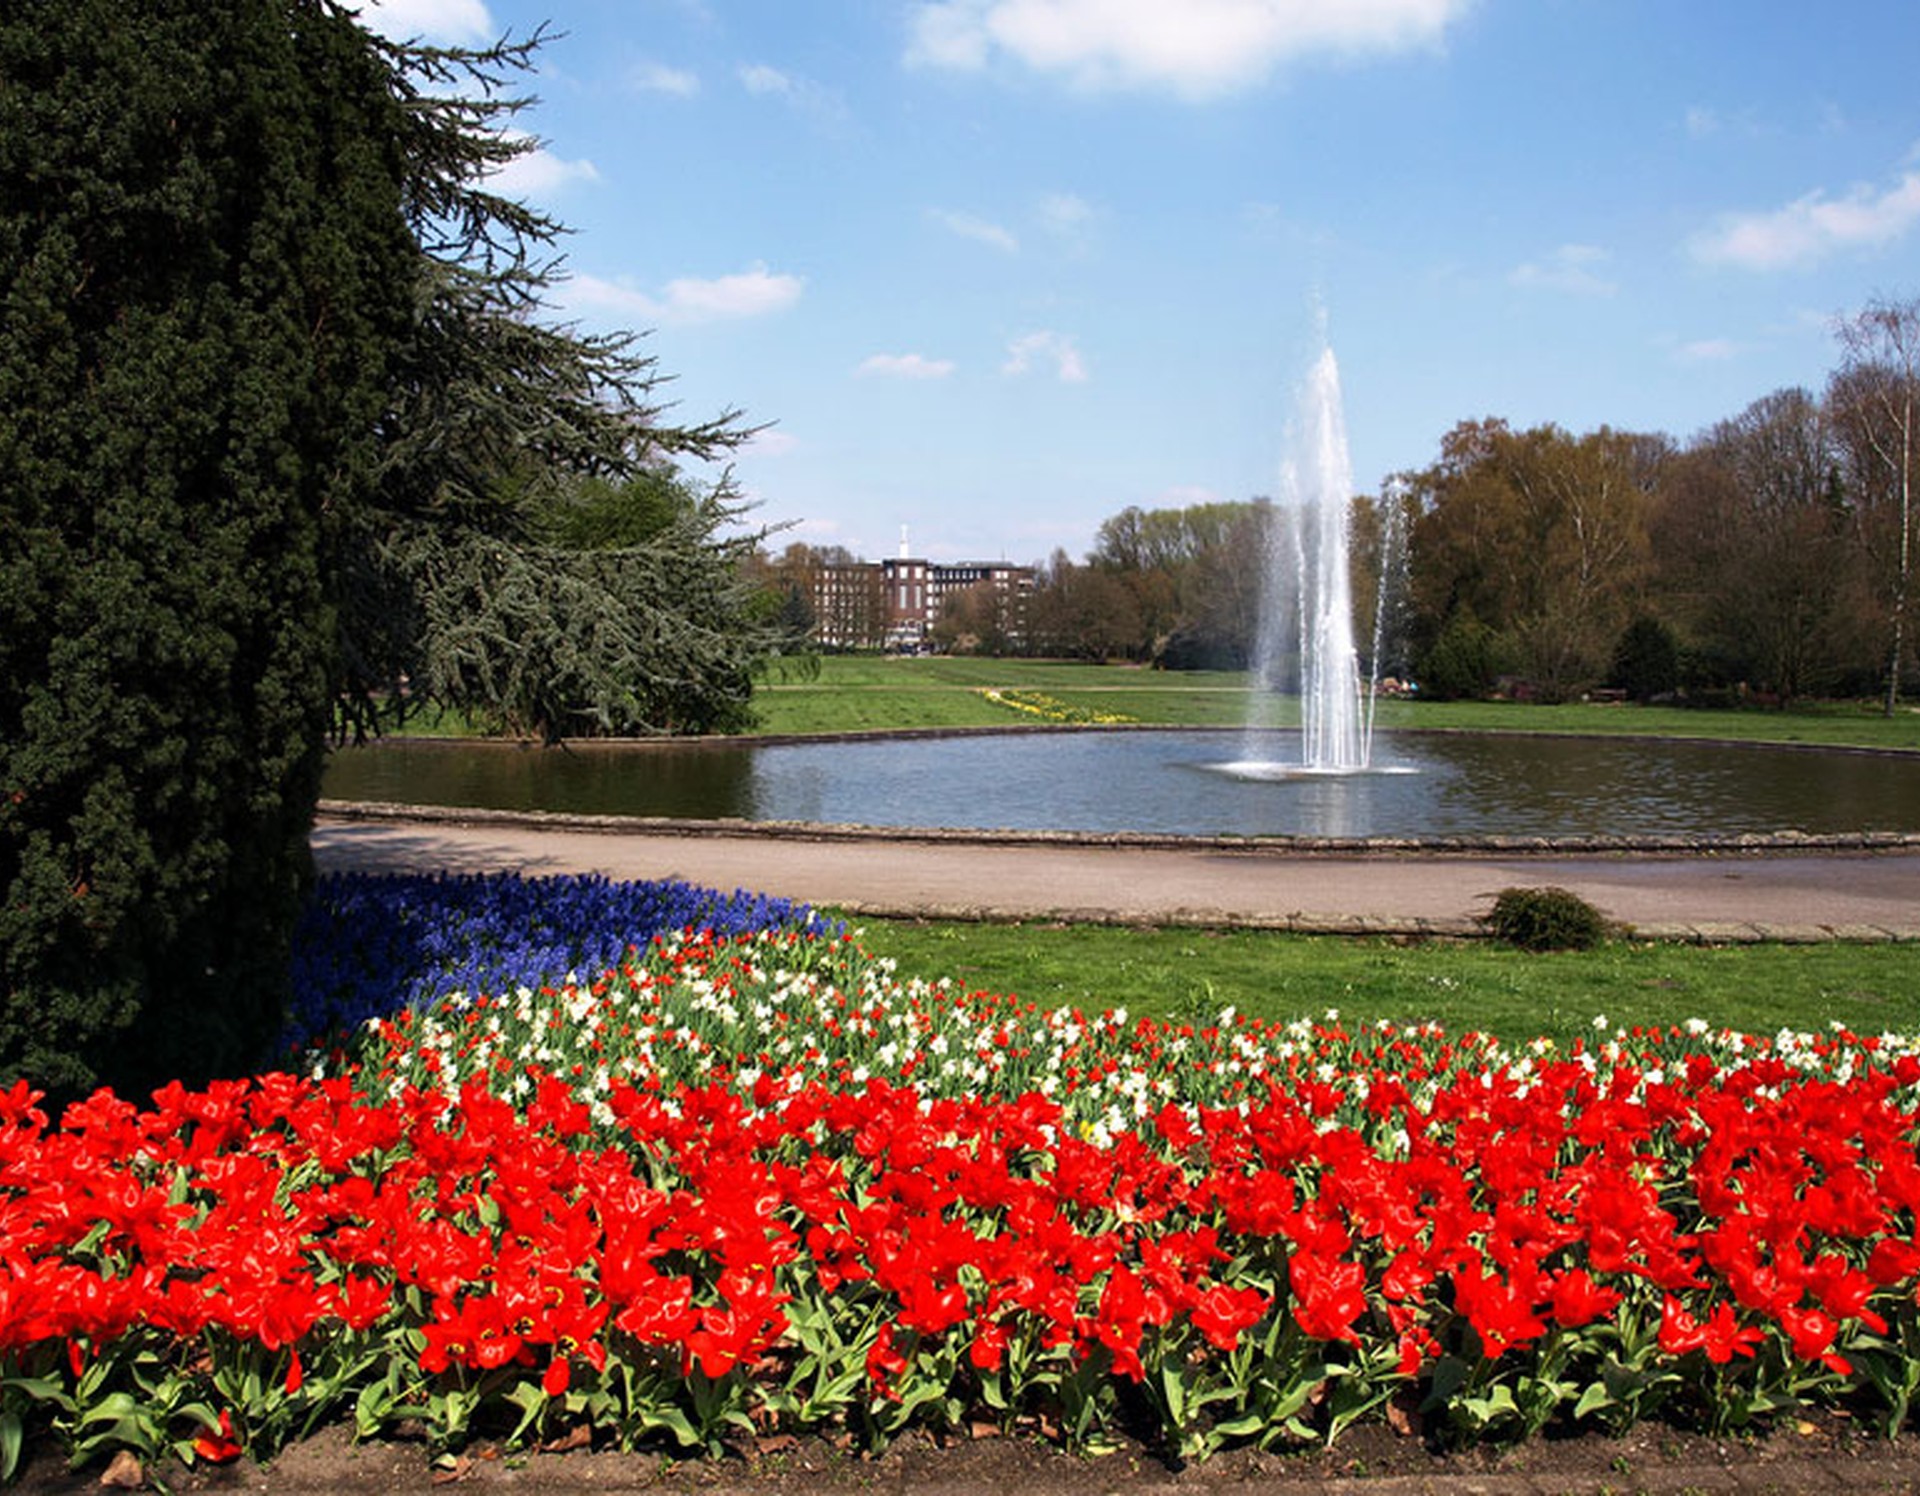 Springbrunnen im Stadtpark Bottrop. Zahlreiche Tulpen zieren die Blumenbeete am Wegesrand.